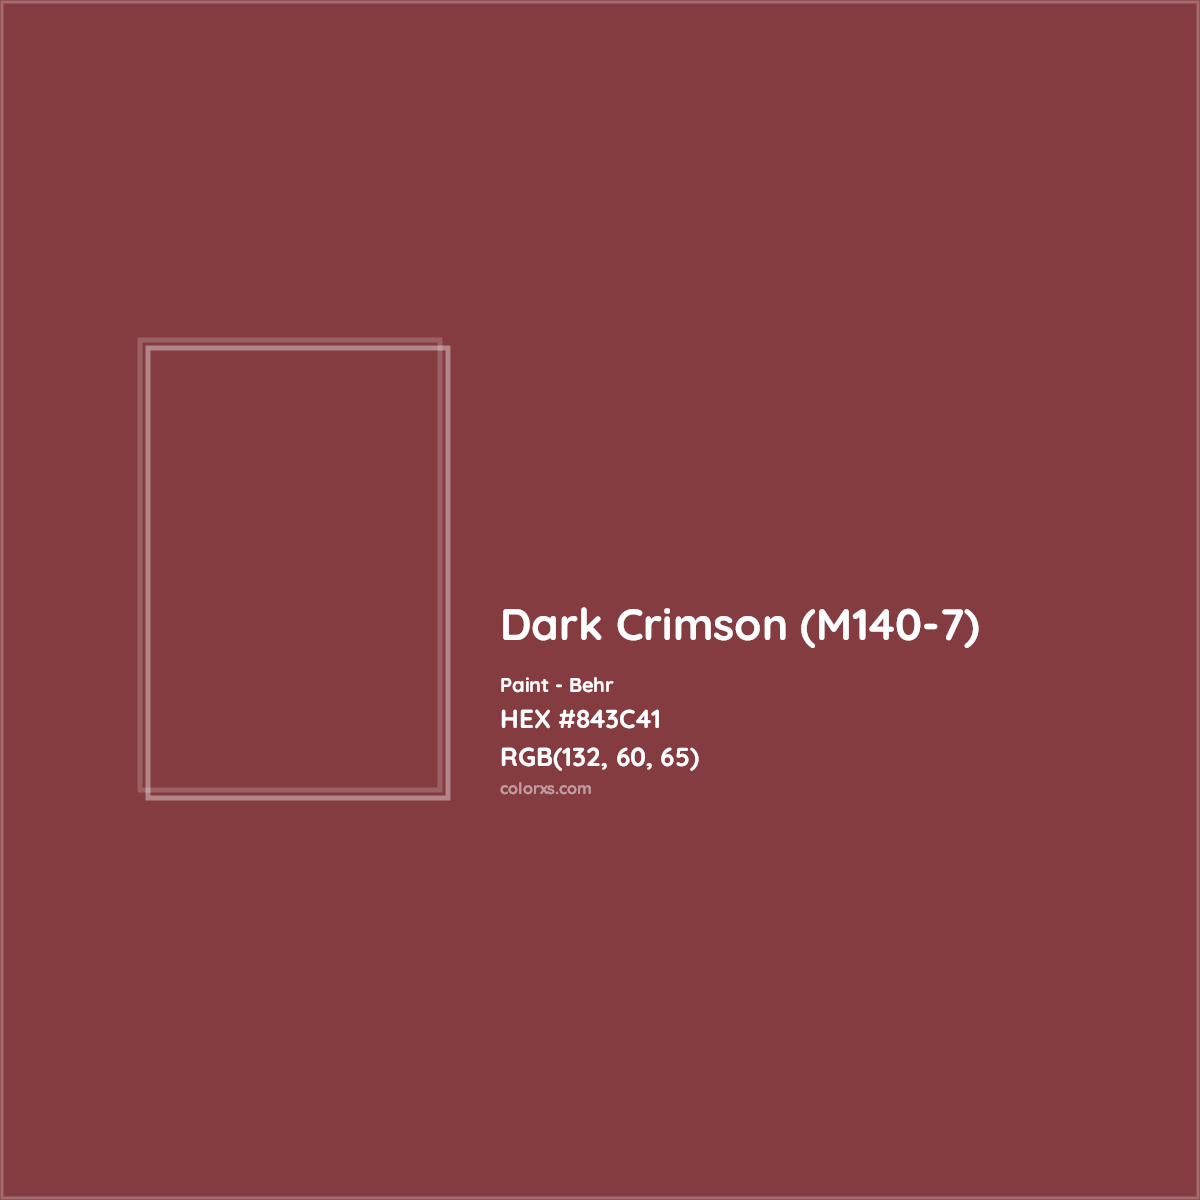 HEX #843C41 Dark Crimson (M140-7) Paint Behr - Color Code